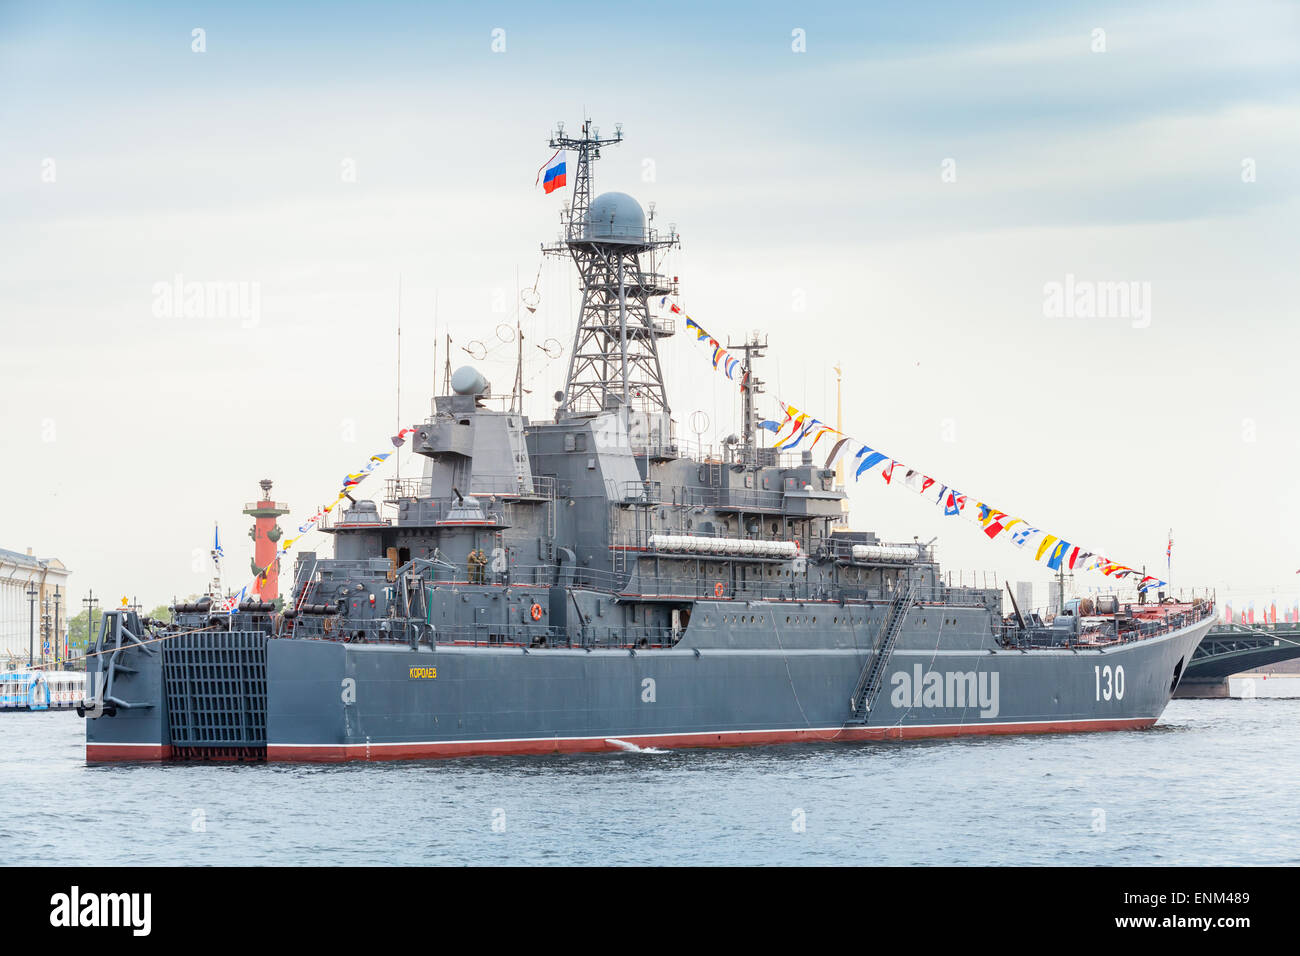 Saint-pétersbourg, Russie - 7 mai 2015 : sur le navire de la rivière Neva en prévision de la parade militaire des forces navales. Ropuch Banque D'Images